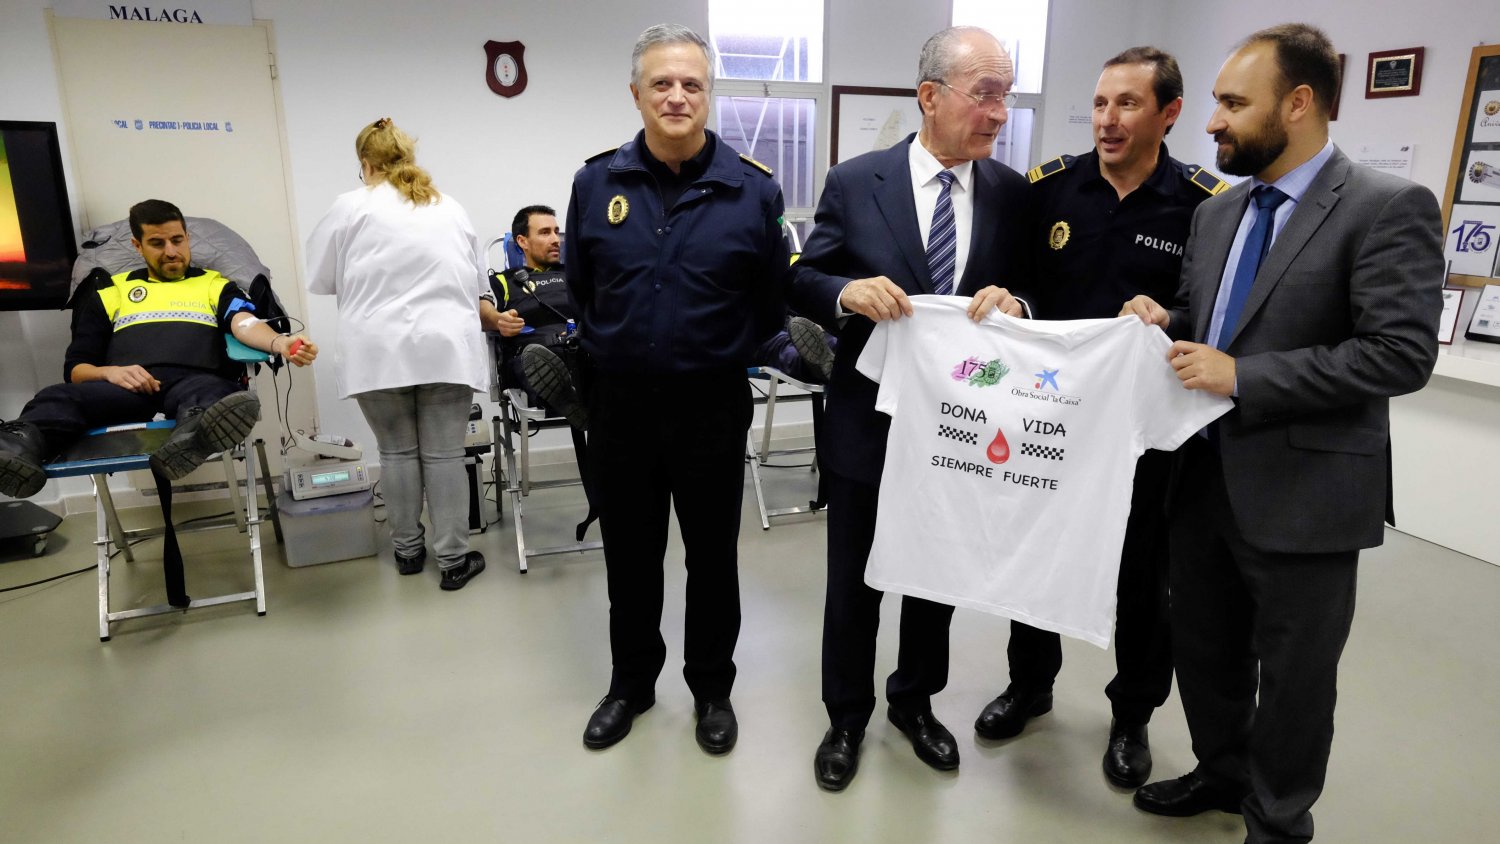 La Policía Local de Málaga supera las 175 extracciones propuestas logrando conseguir 207 donaciones de sangre